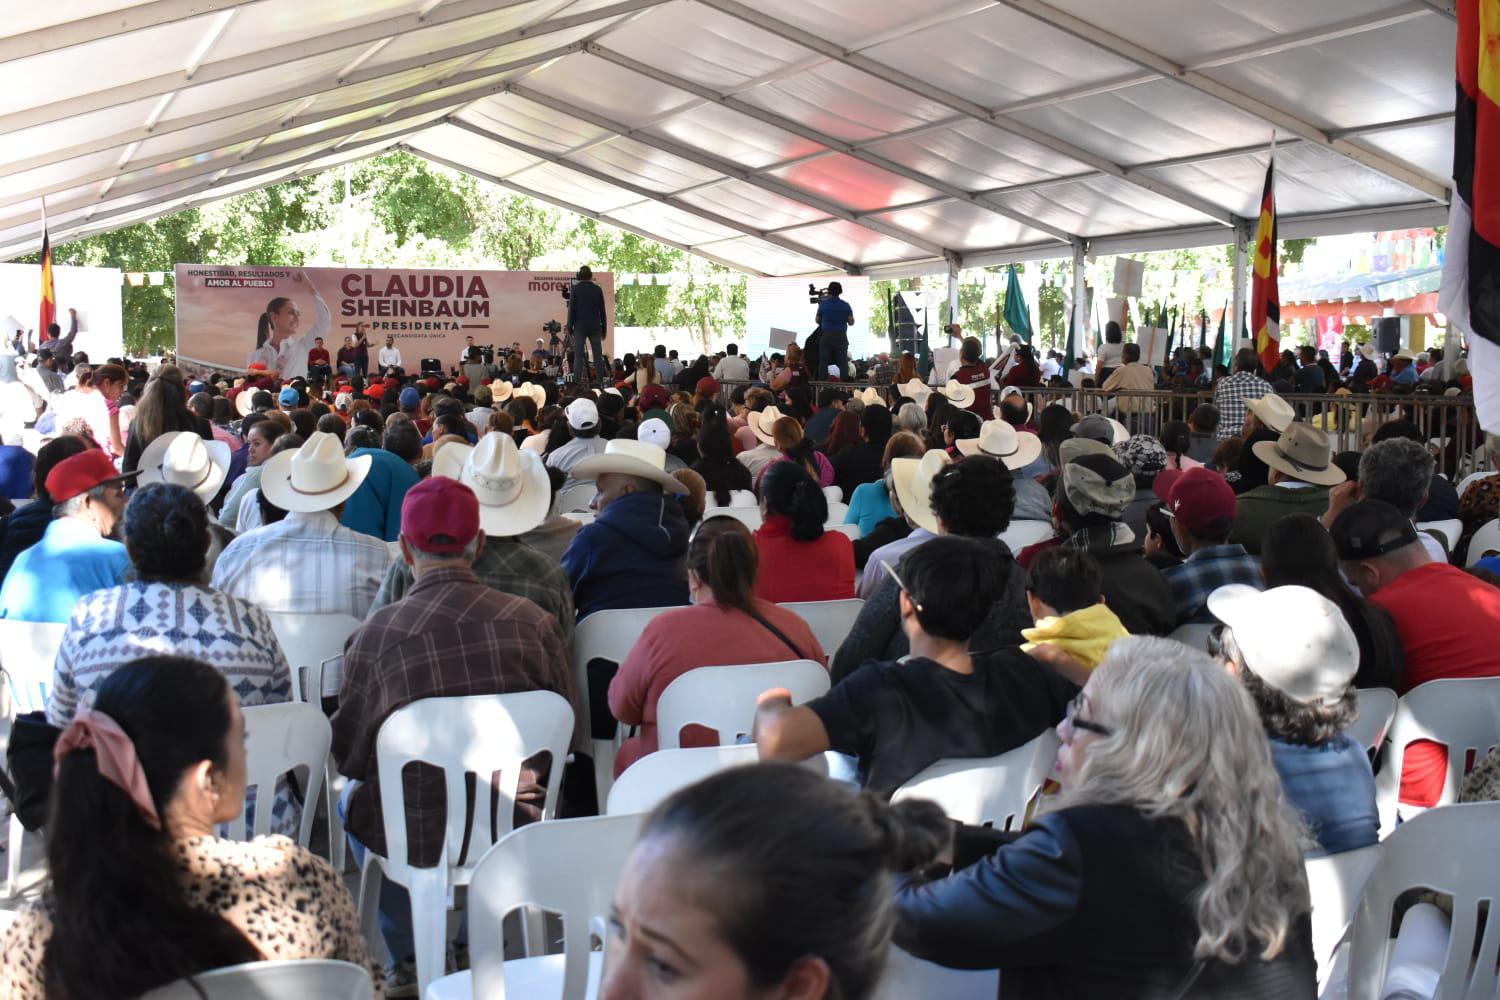 $!Reúne Sheinbaum a más de 2 mil en Guasave; ofrece beca universal para niños